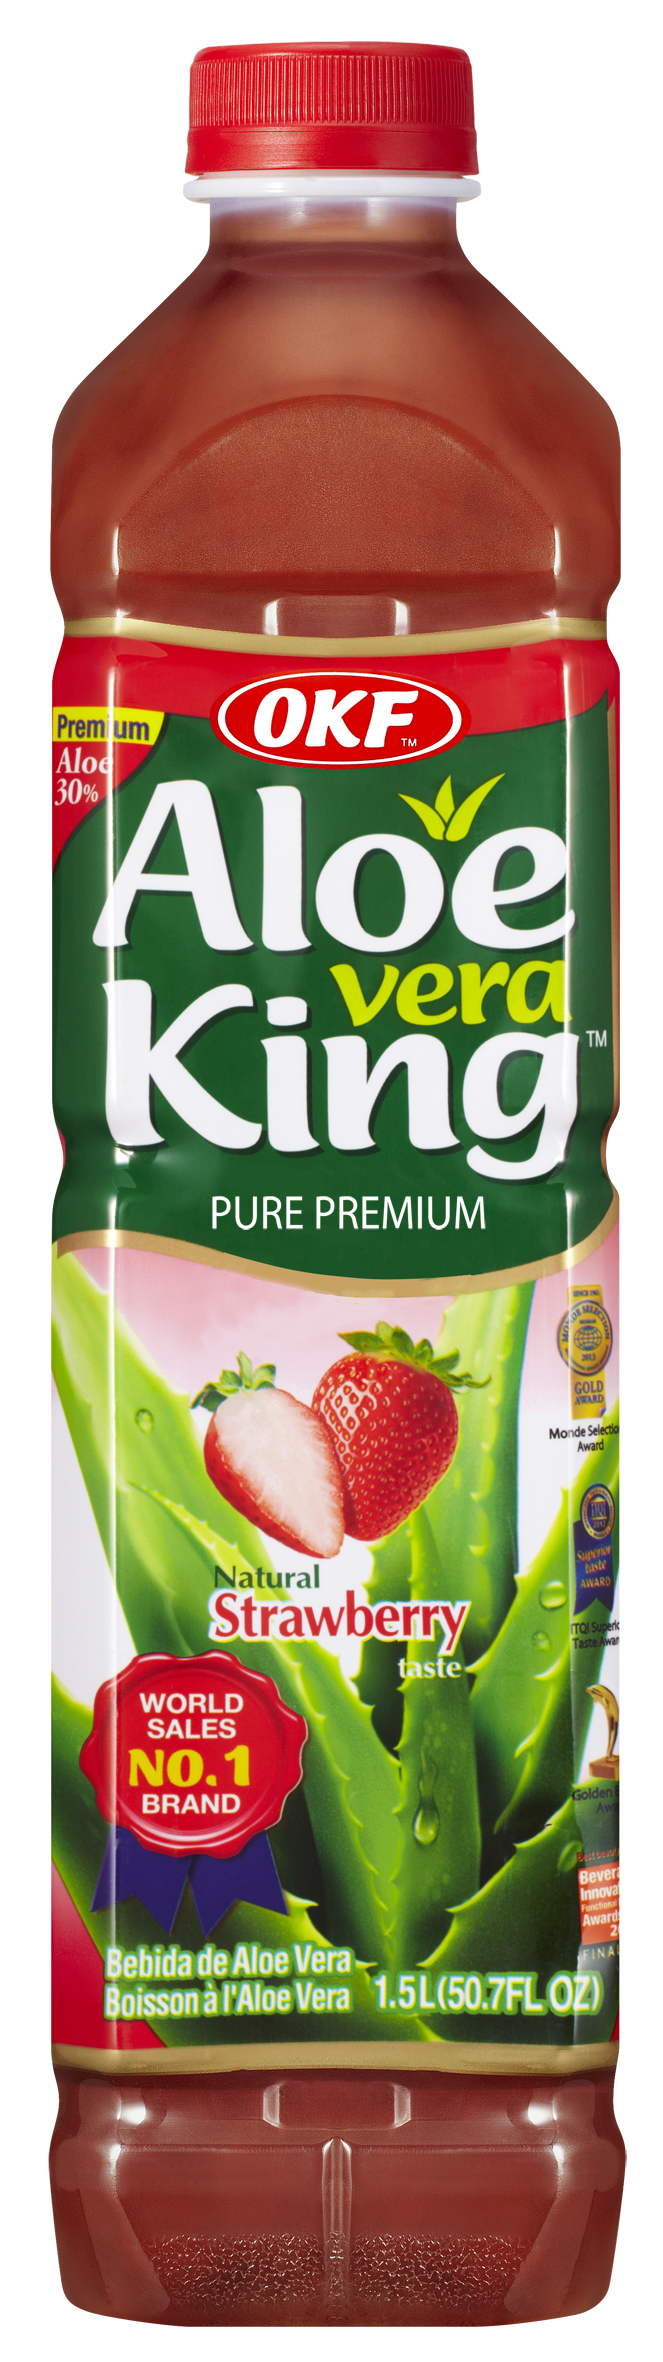 Avk050 Aloe King Strawberry, 1.5 Liter - Case Of 12